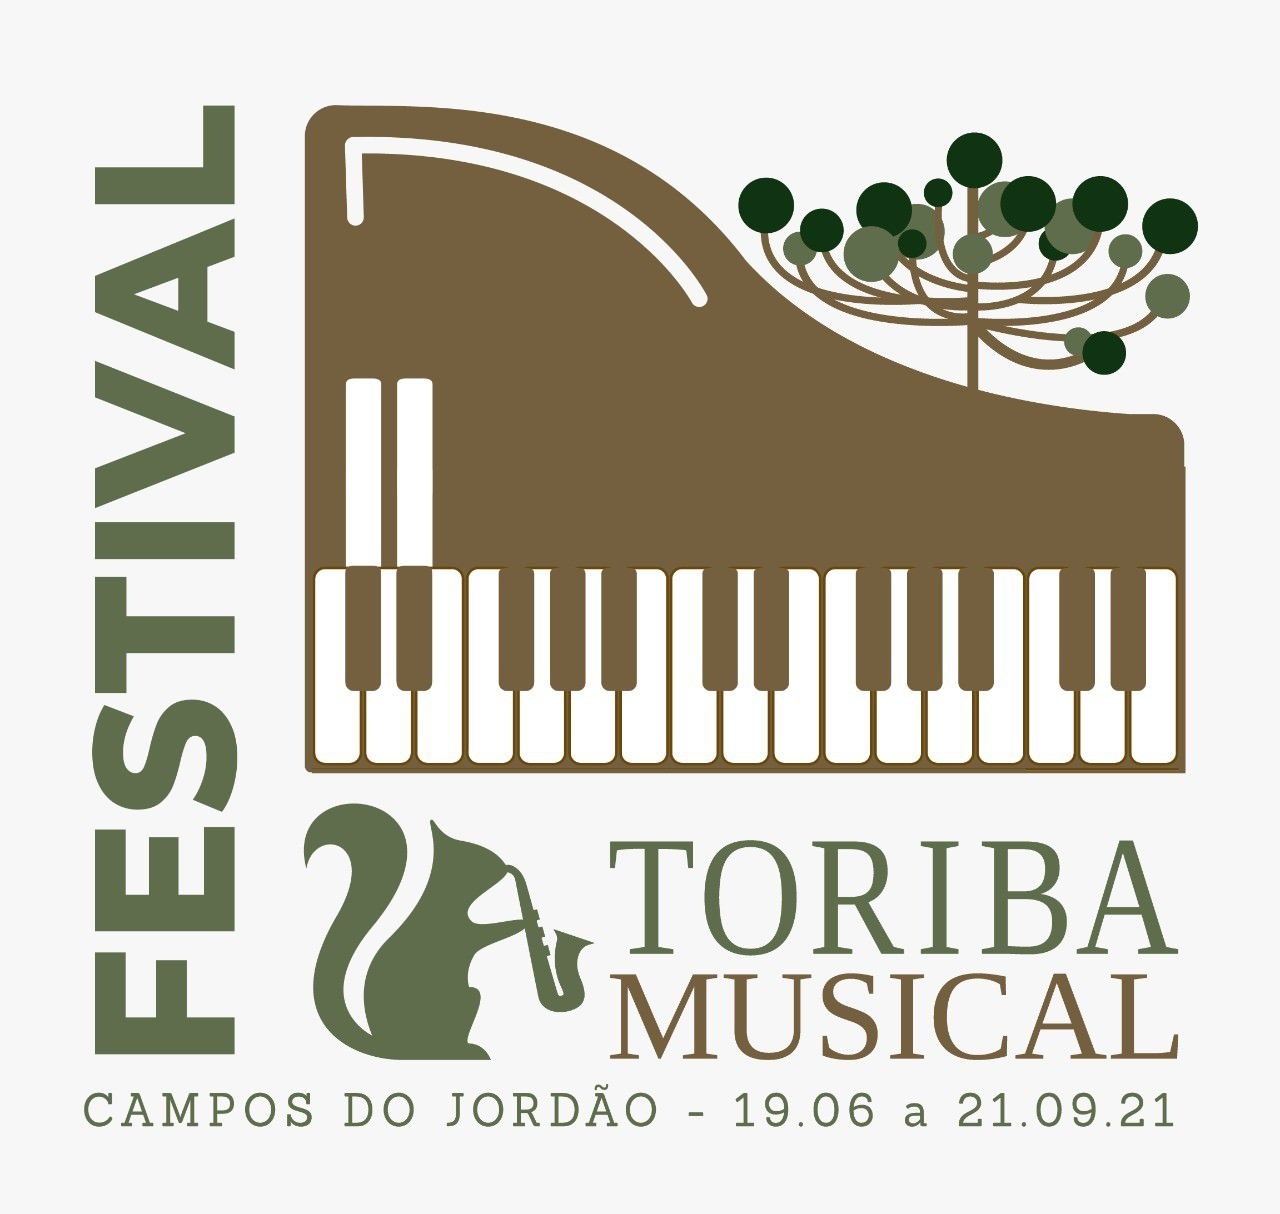 פסטיבל טוריבה מיוזיקל 2021, בקרוב. גילוי.